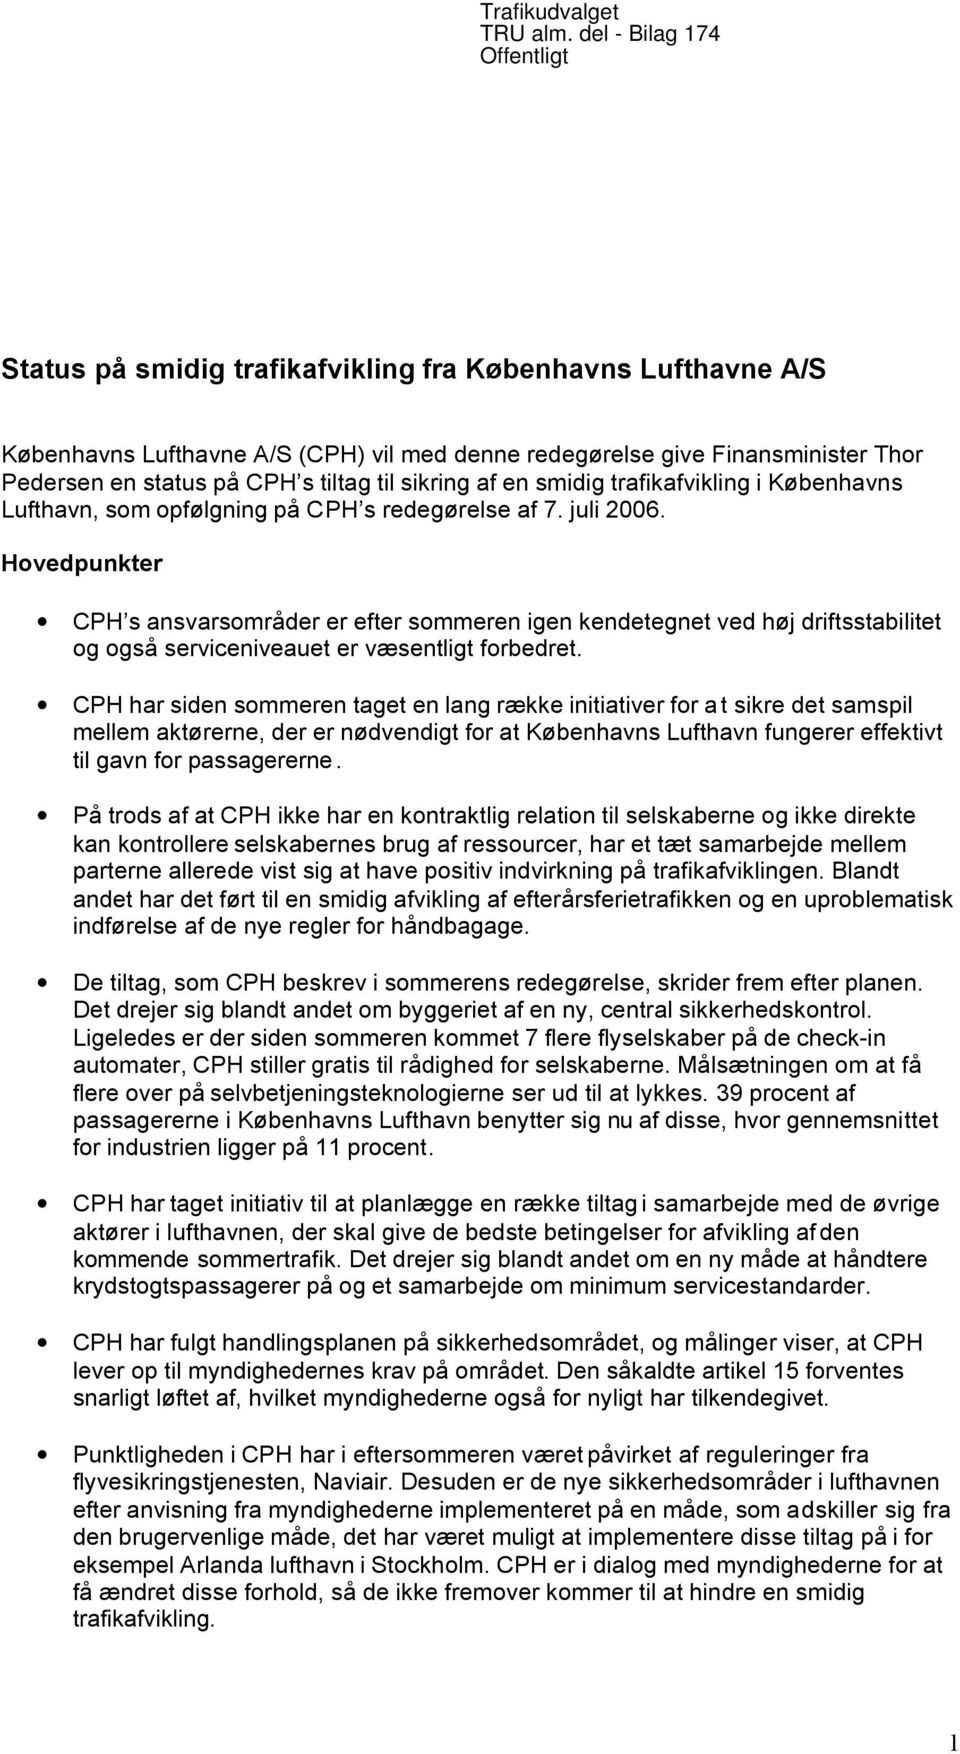 tiltag til sikring af en smidig trafikafvikling i Københavns Lufthavn, som opfølgning på CPH s redegørelse af 7. juli 2006.